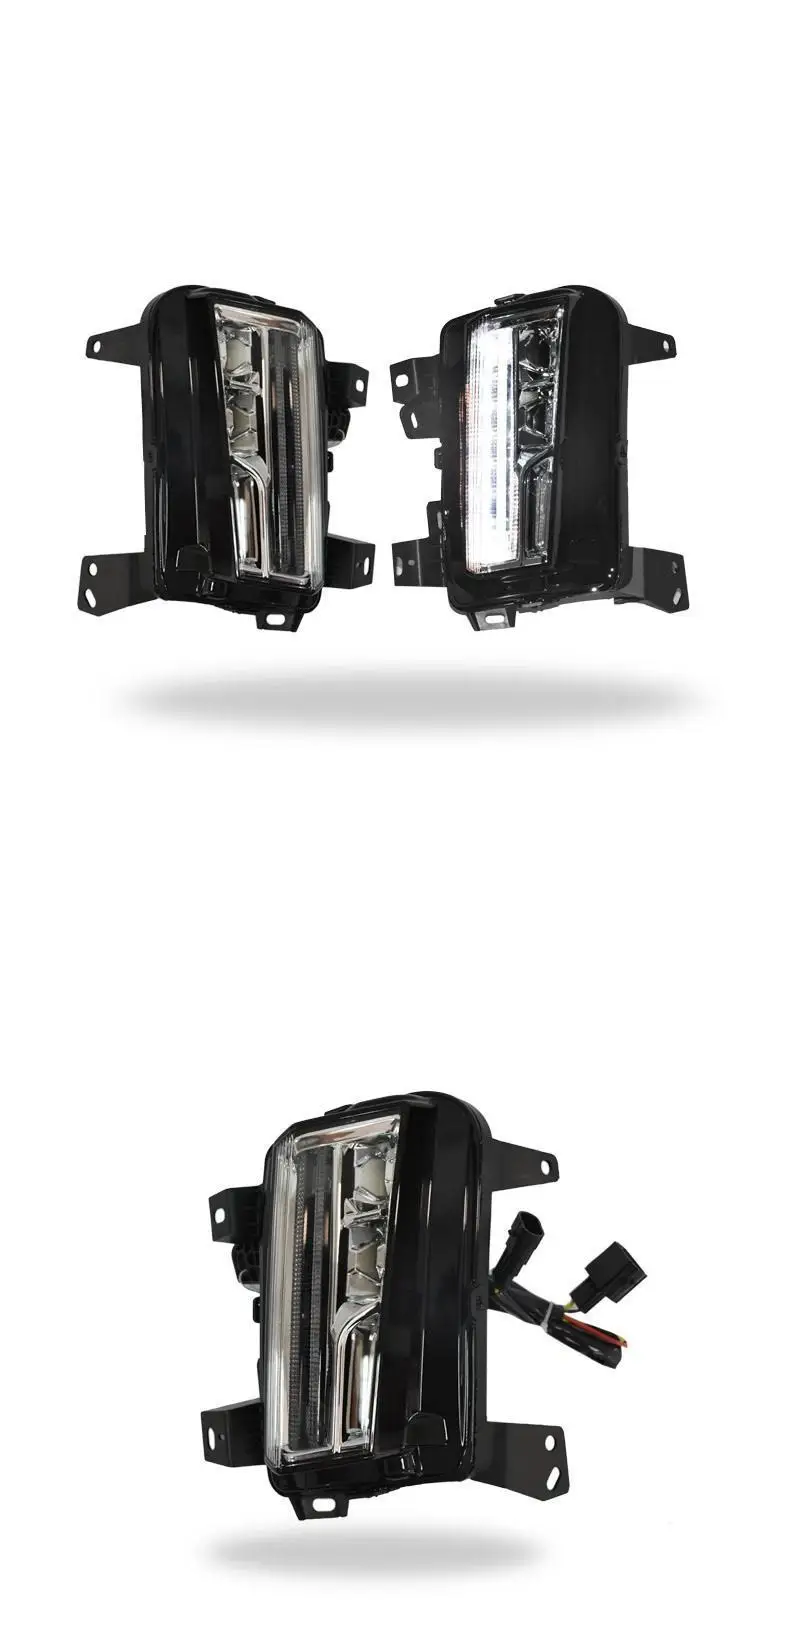 Drl авто автомобили дневные светодиодные ходовые боковые поворотники автомобиля освещение фары передние противотуманные фары 16 17 18 для Cadillac XT5